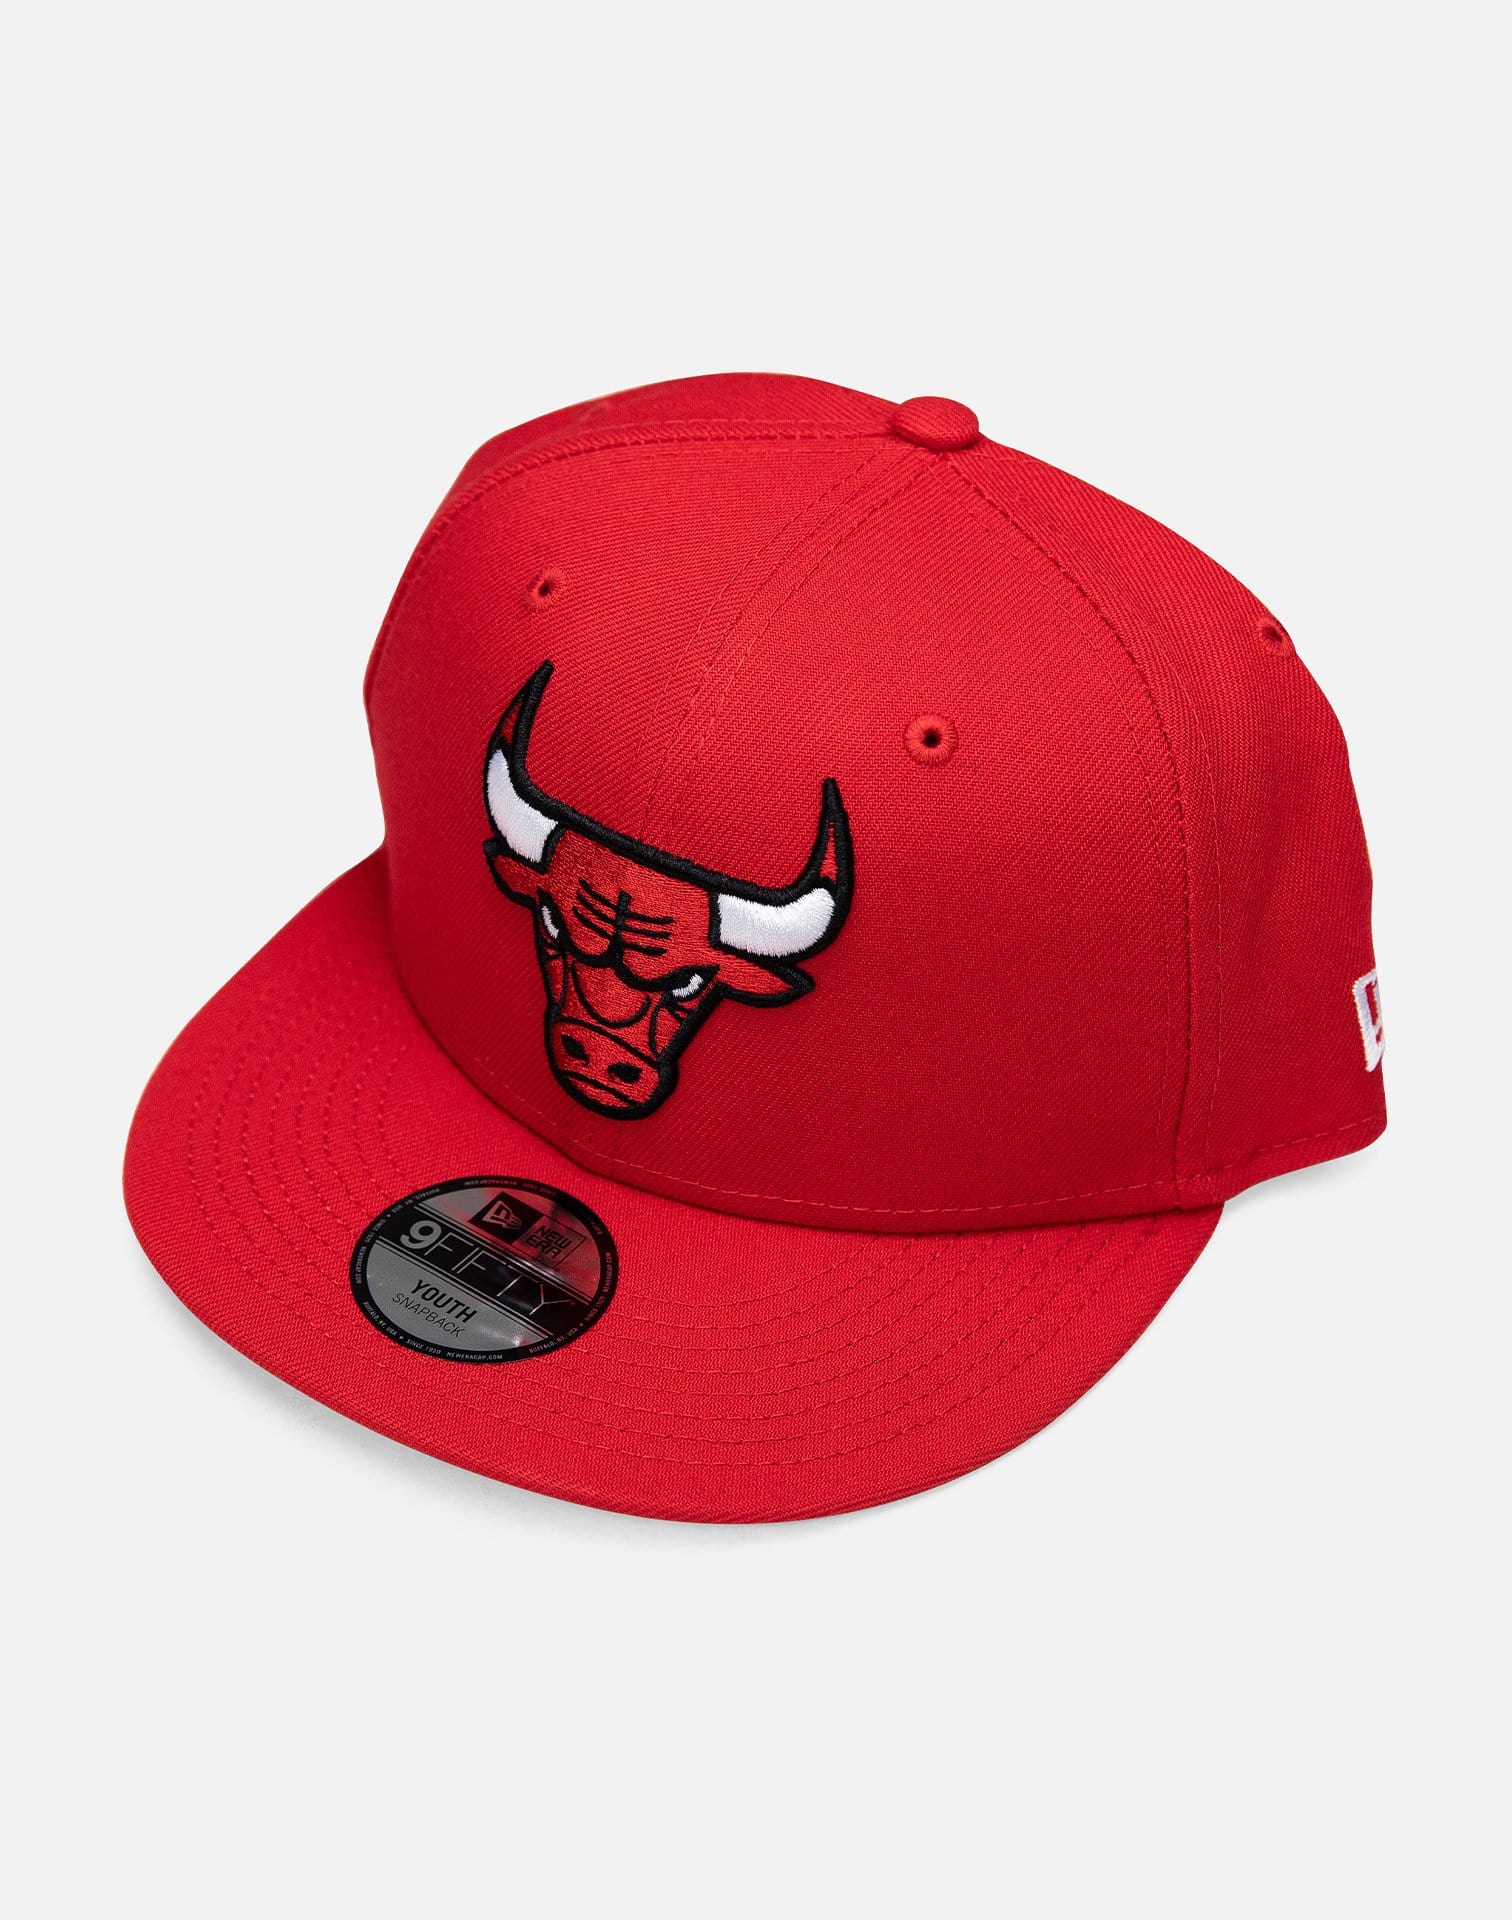 Internationale bizon Bezwaar New Era NBA Chicago Bulls Hat – DTLR